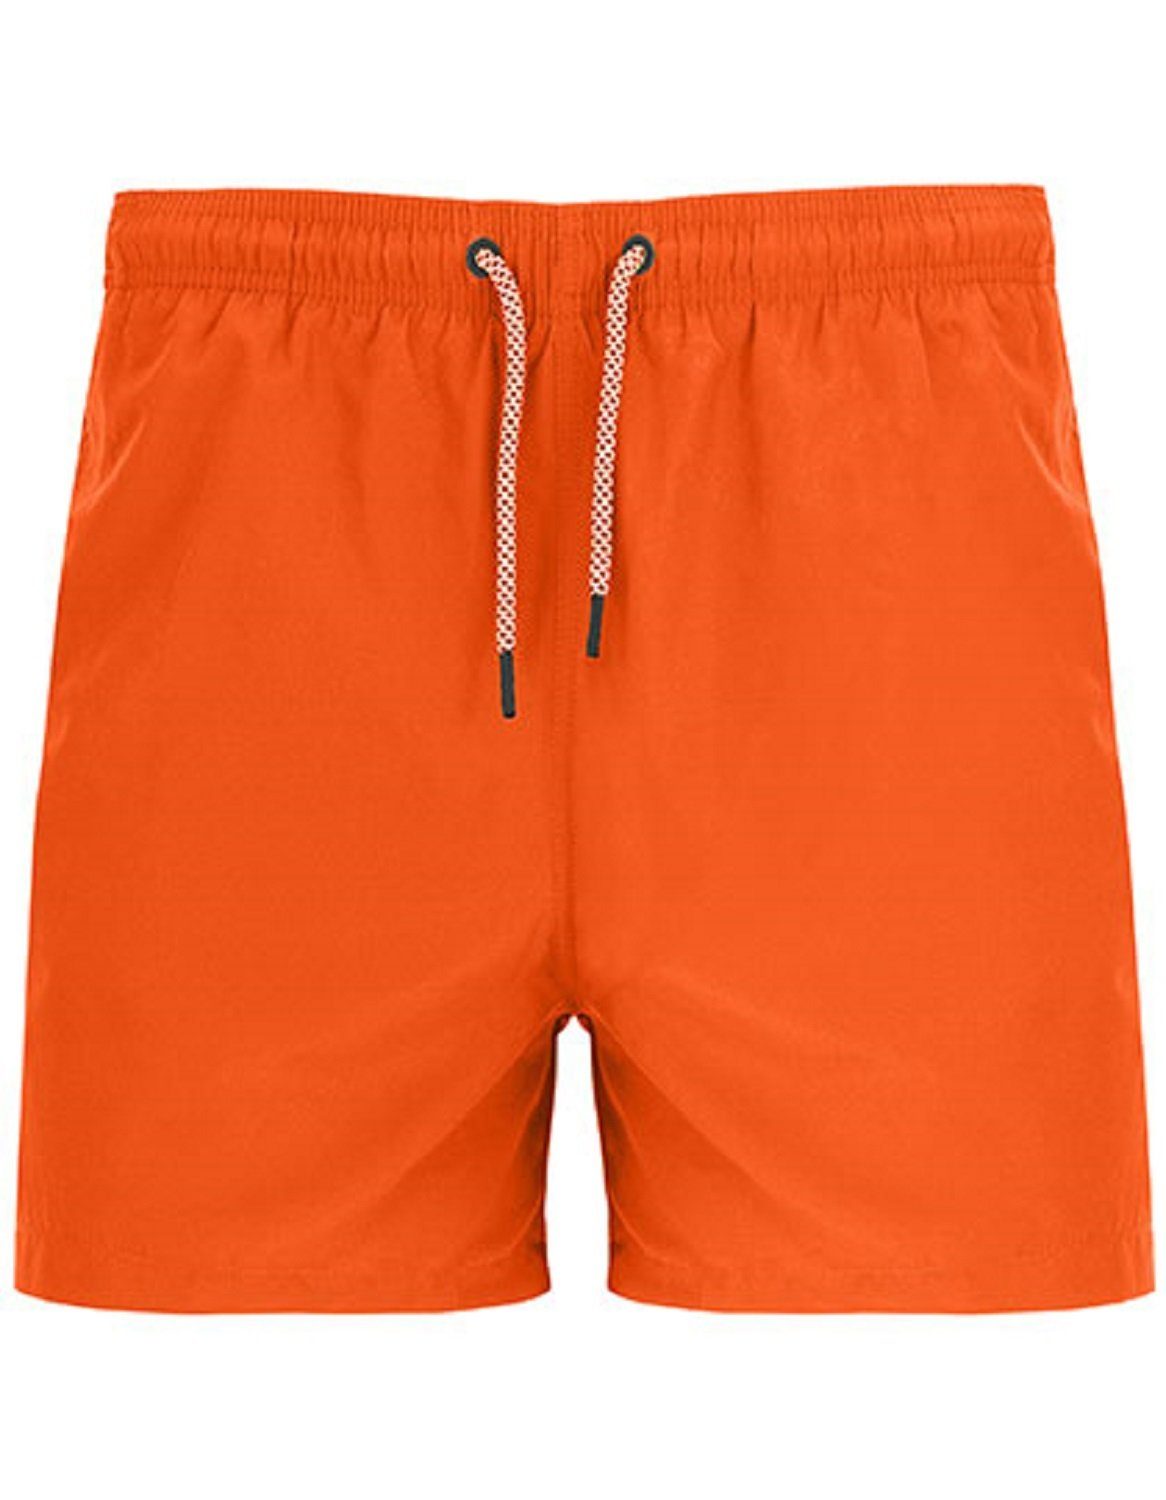 Roly Sport Badehose Herren Badeshorts verschiedene mit Orange / bis - XXL S Badehose Gr. zwei Seitentaschen Farben